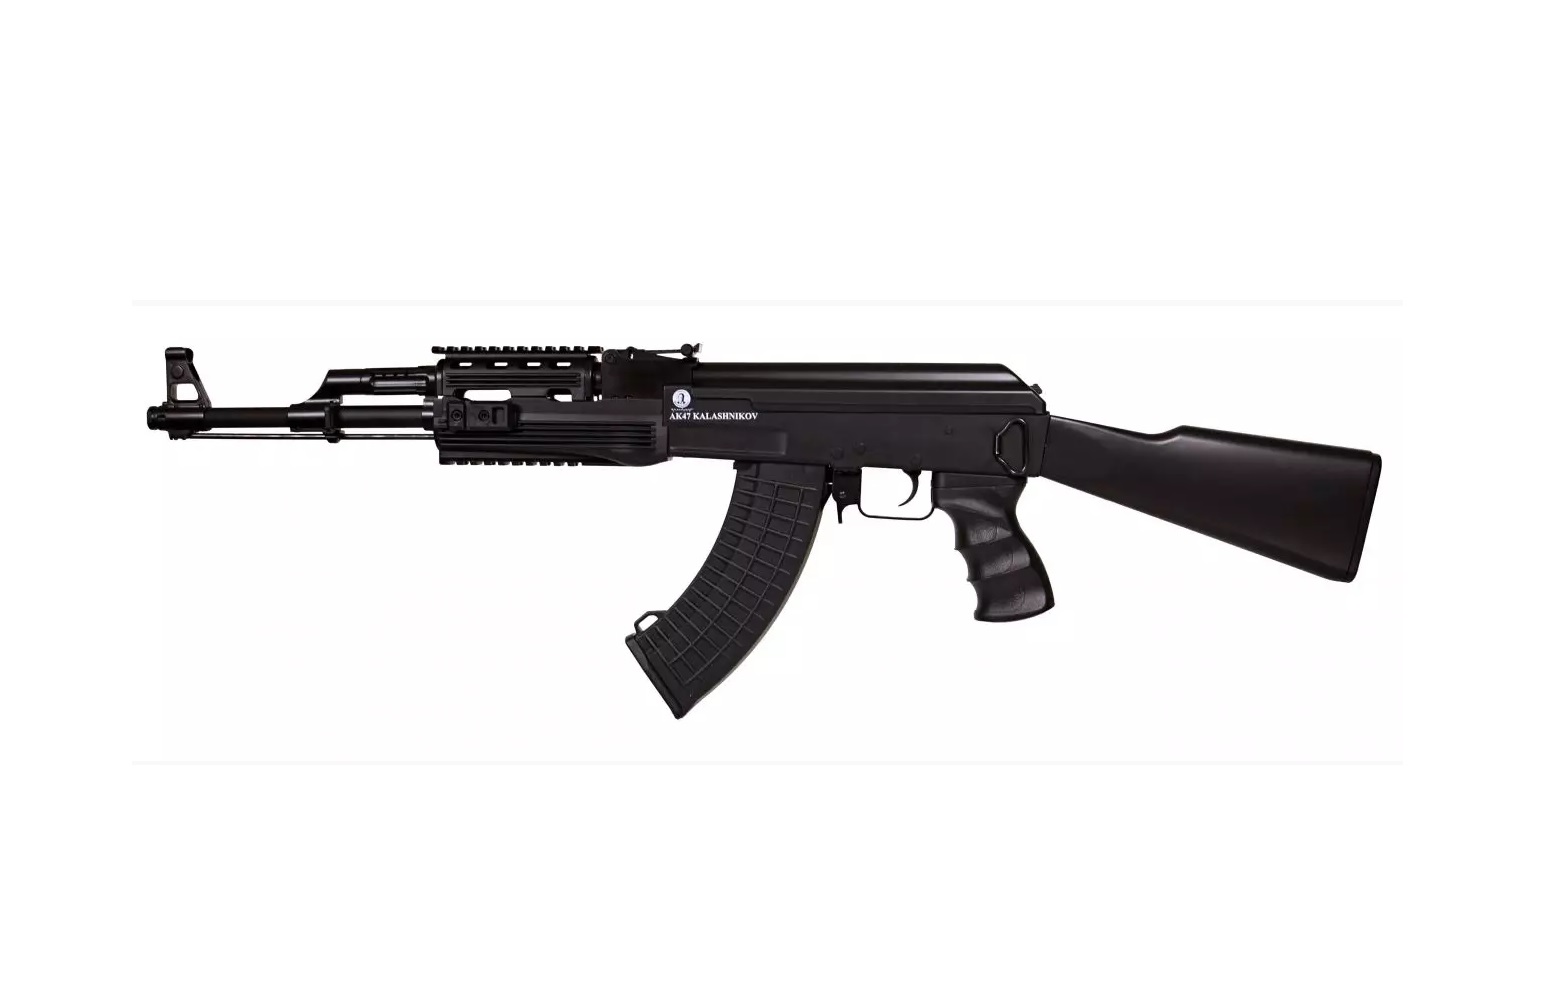 AK 47 TACTICAL